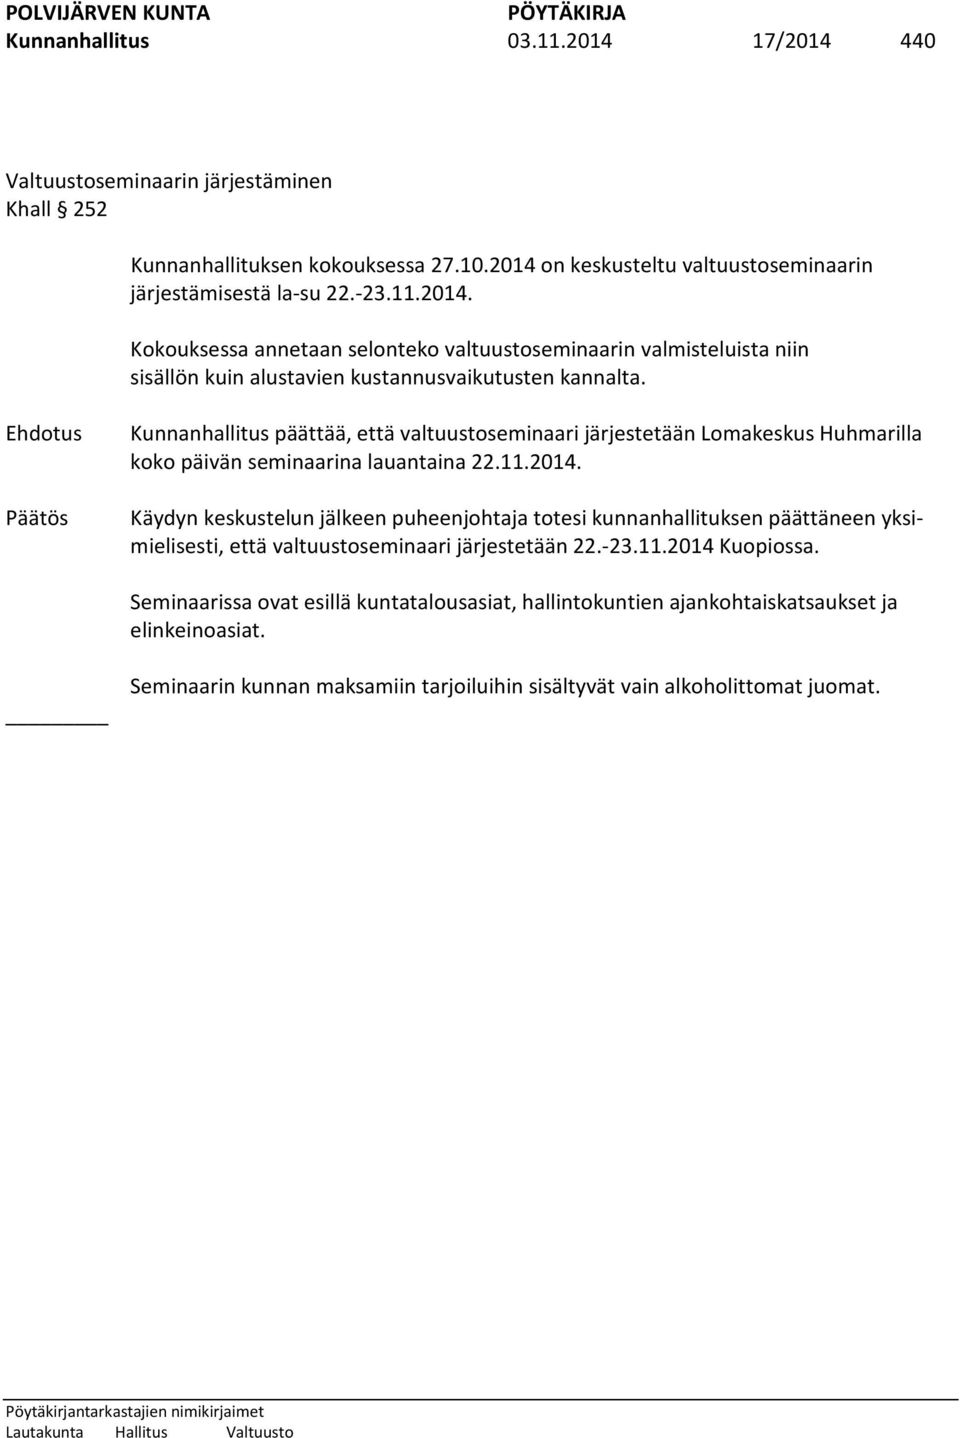 Käydyn keskustelun jälkeen puheenjohtaja totesi kunnanhallituksen päättäneen yksimielisesti, että valtuustoseminaari järjestetään 22.-23.11.2014 Kuopiossa.